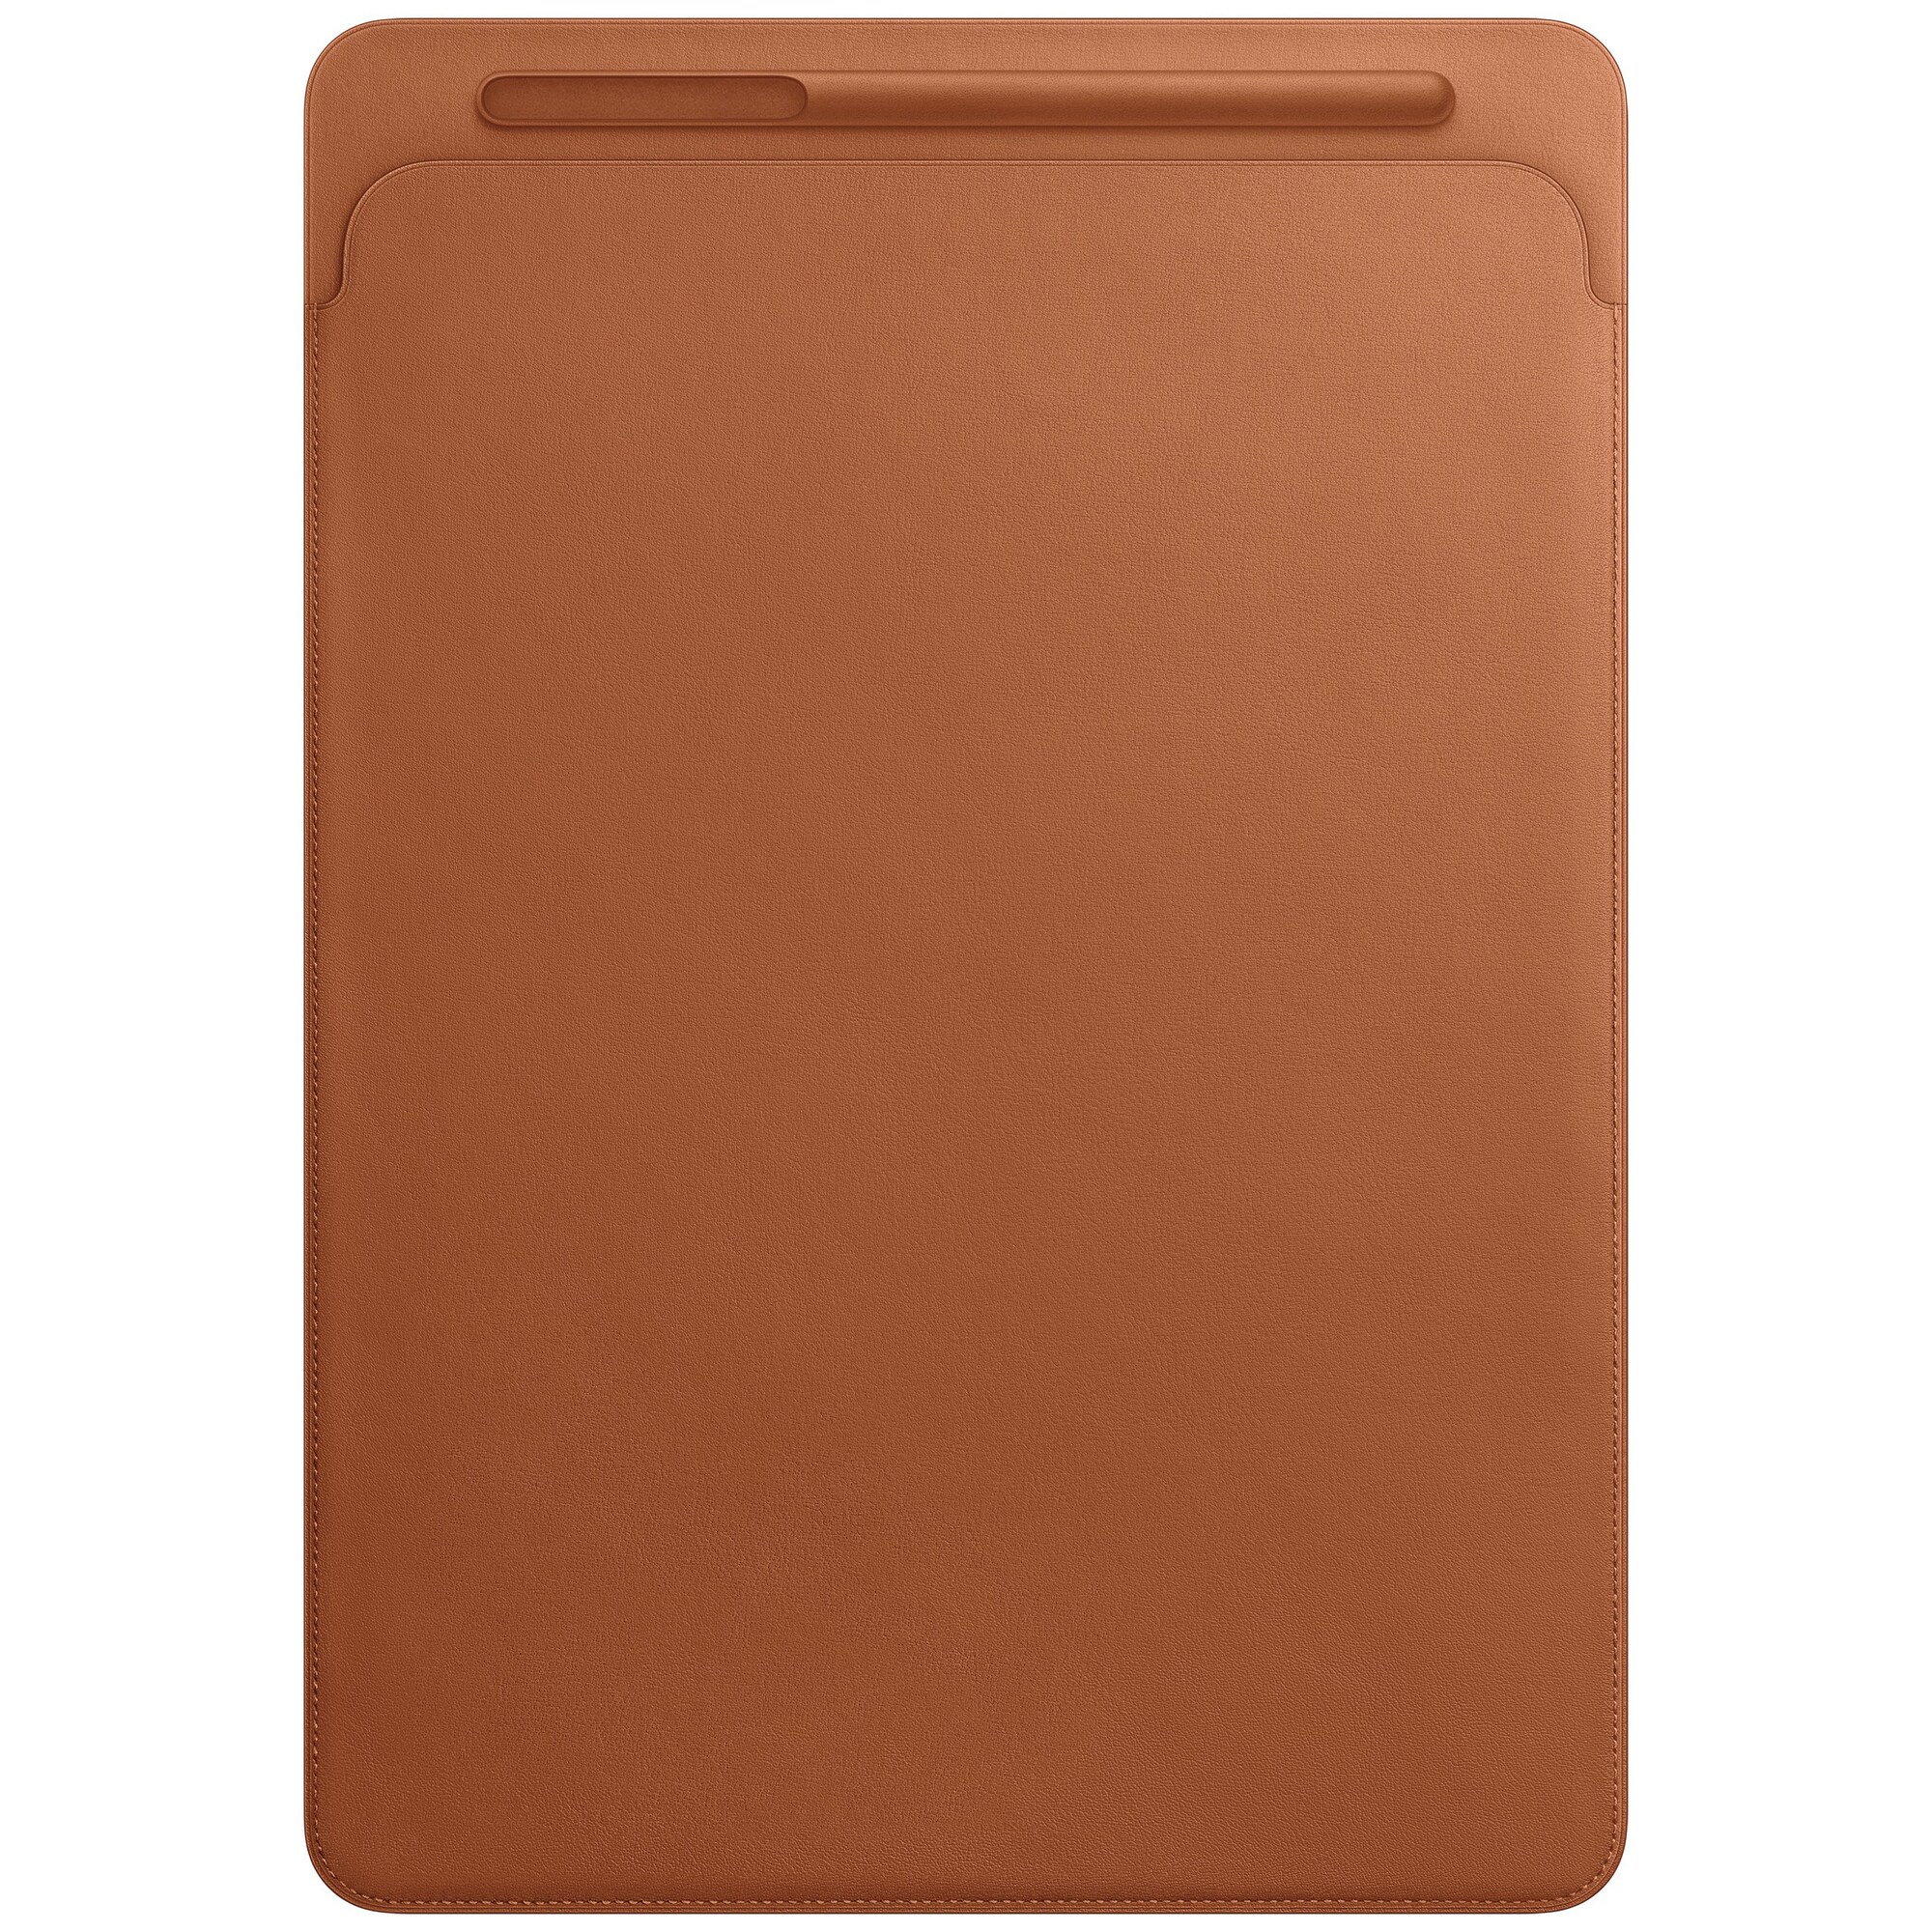 iPad Pro 12.9 skinnetui (nøttebrun) - Tilbehør iPad og nettbrett ...